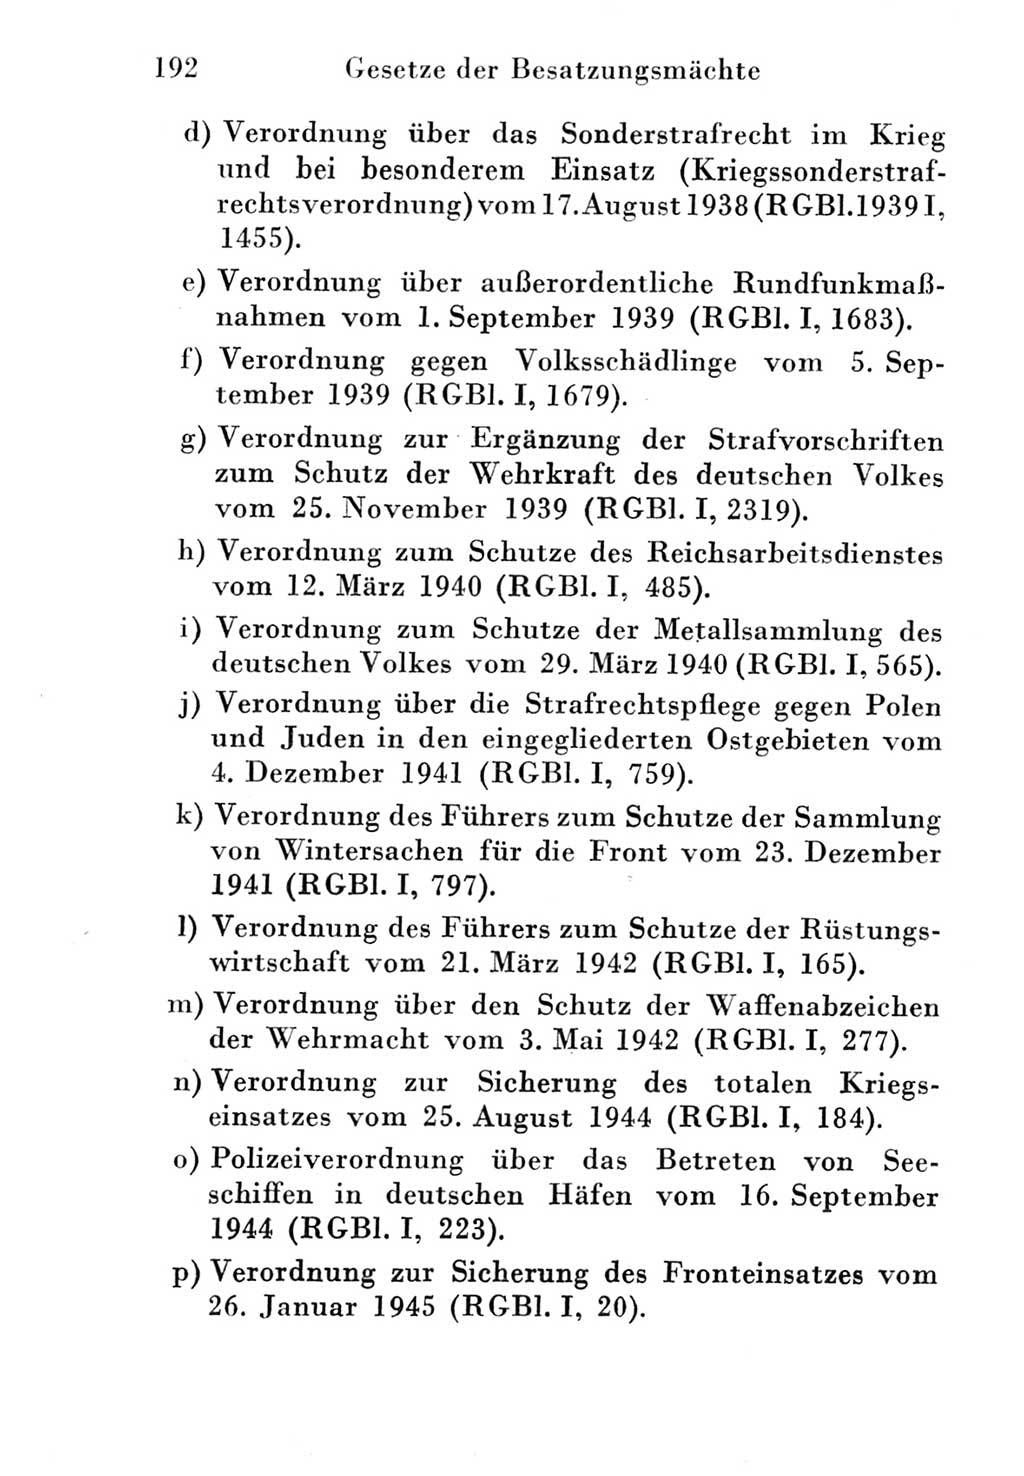 Strafgesetzbuch (StGB) und andere Strafgesetze [Deutsche Demokratische Republik (DDR)] 1951, Seite 192 (StGB Strafges. DDR 1951, S. 192)